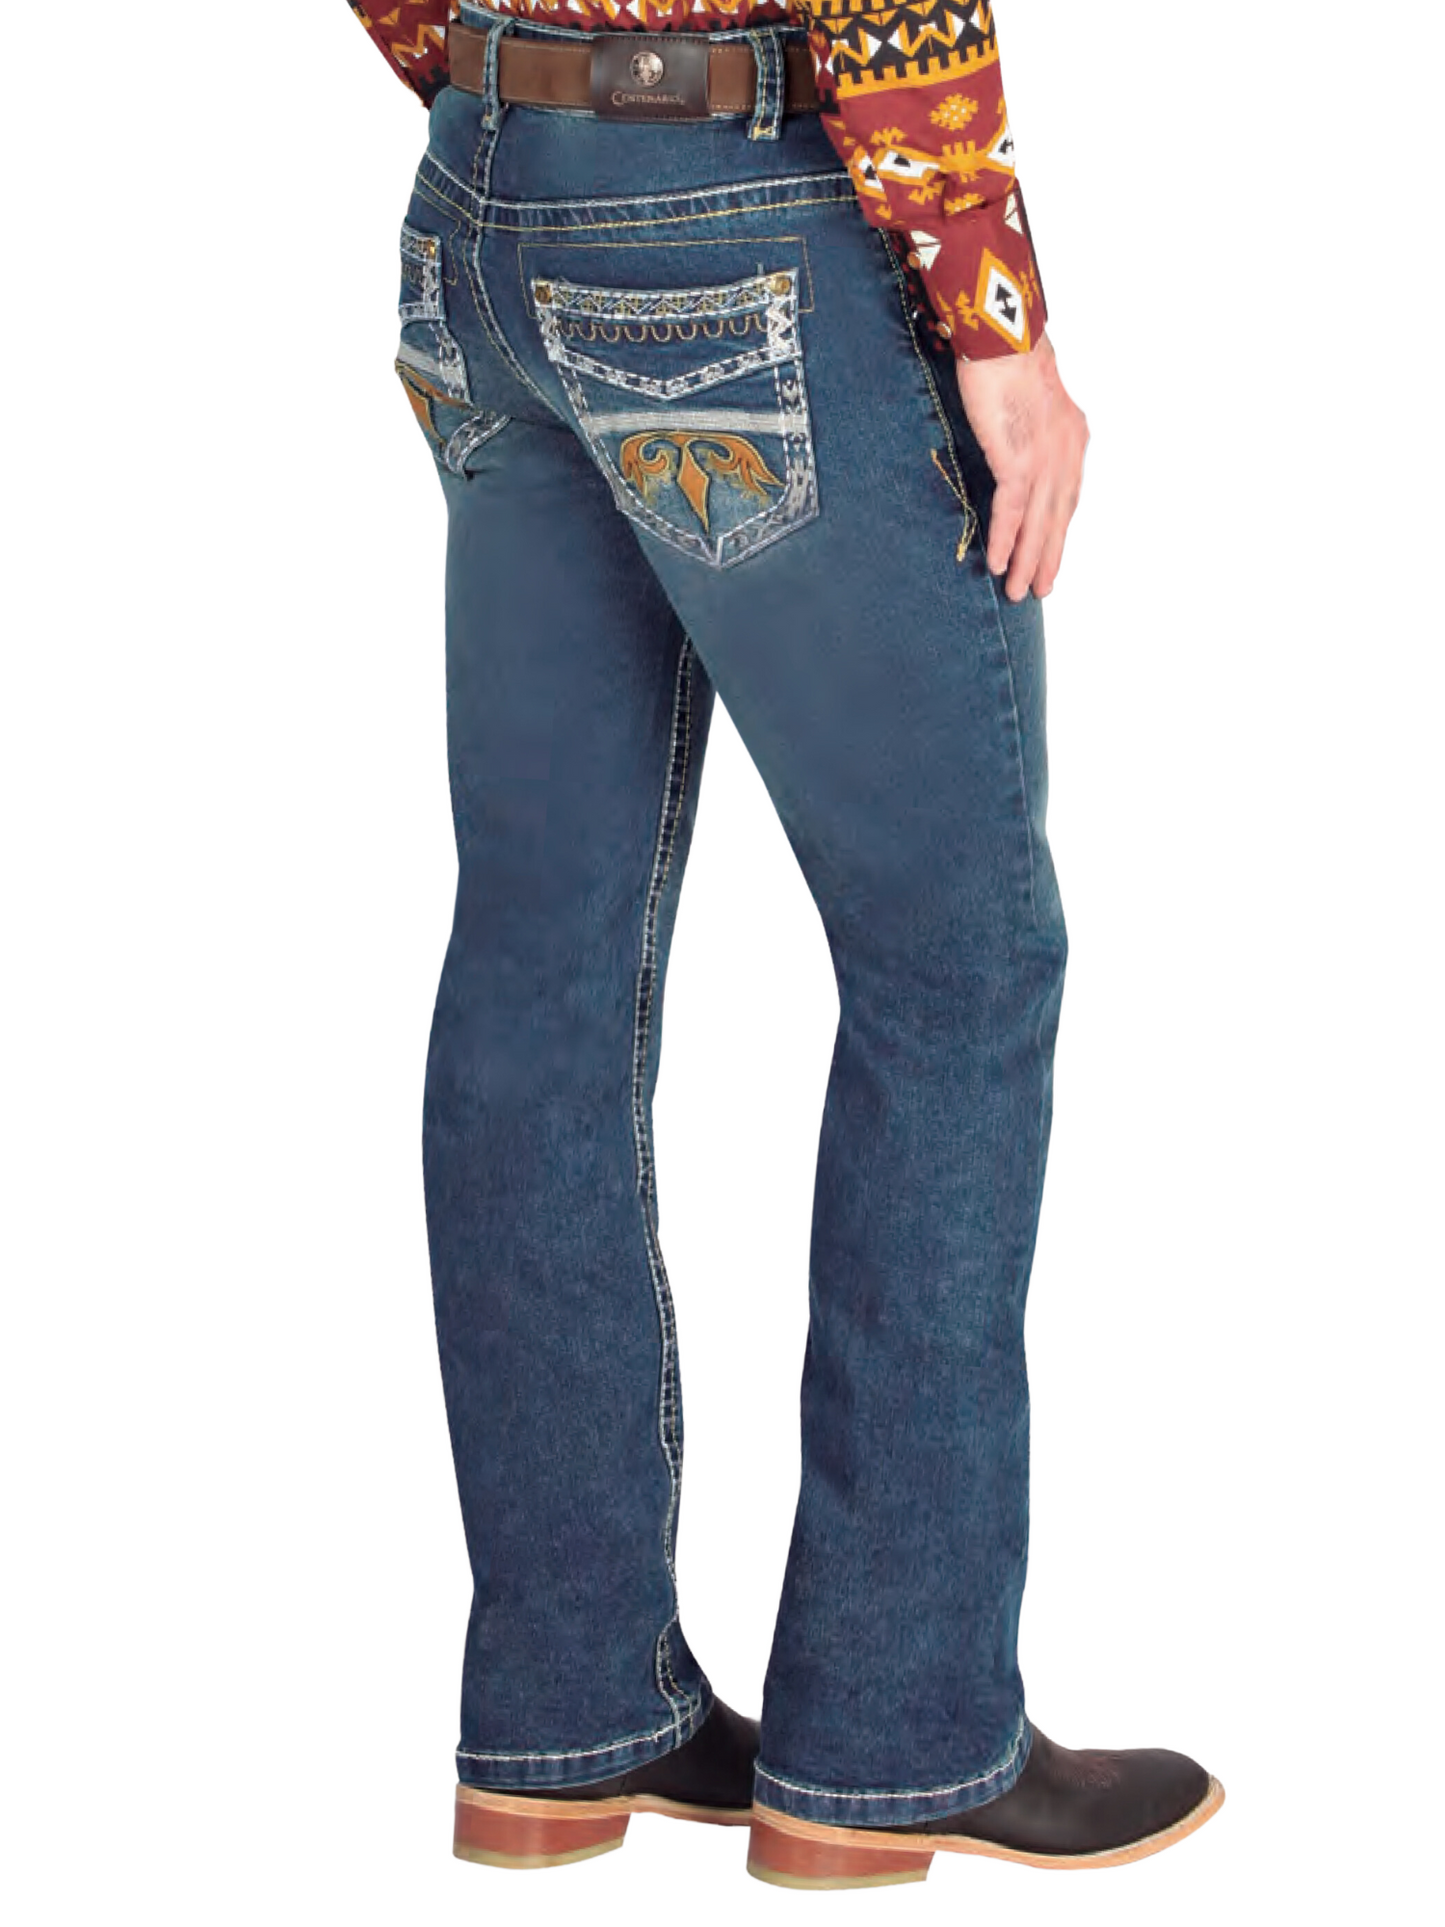 Pantalon Vaquero de Mezclilla Boot Cut Azul Oscuro para Hombre 'Centenario' - ID: 44835 Denim Jeans Centenario 